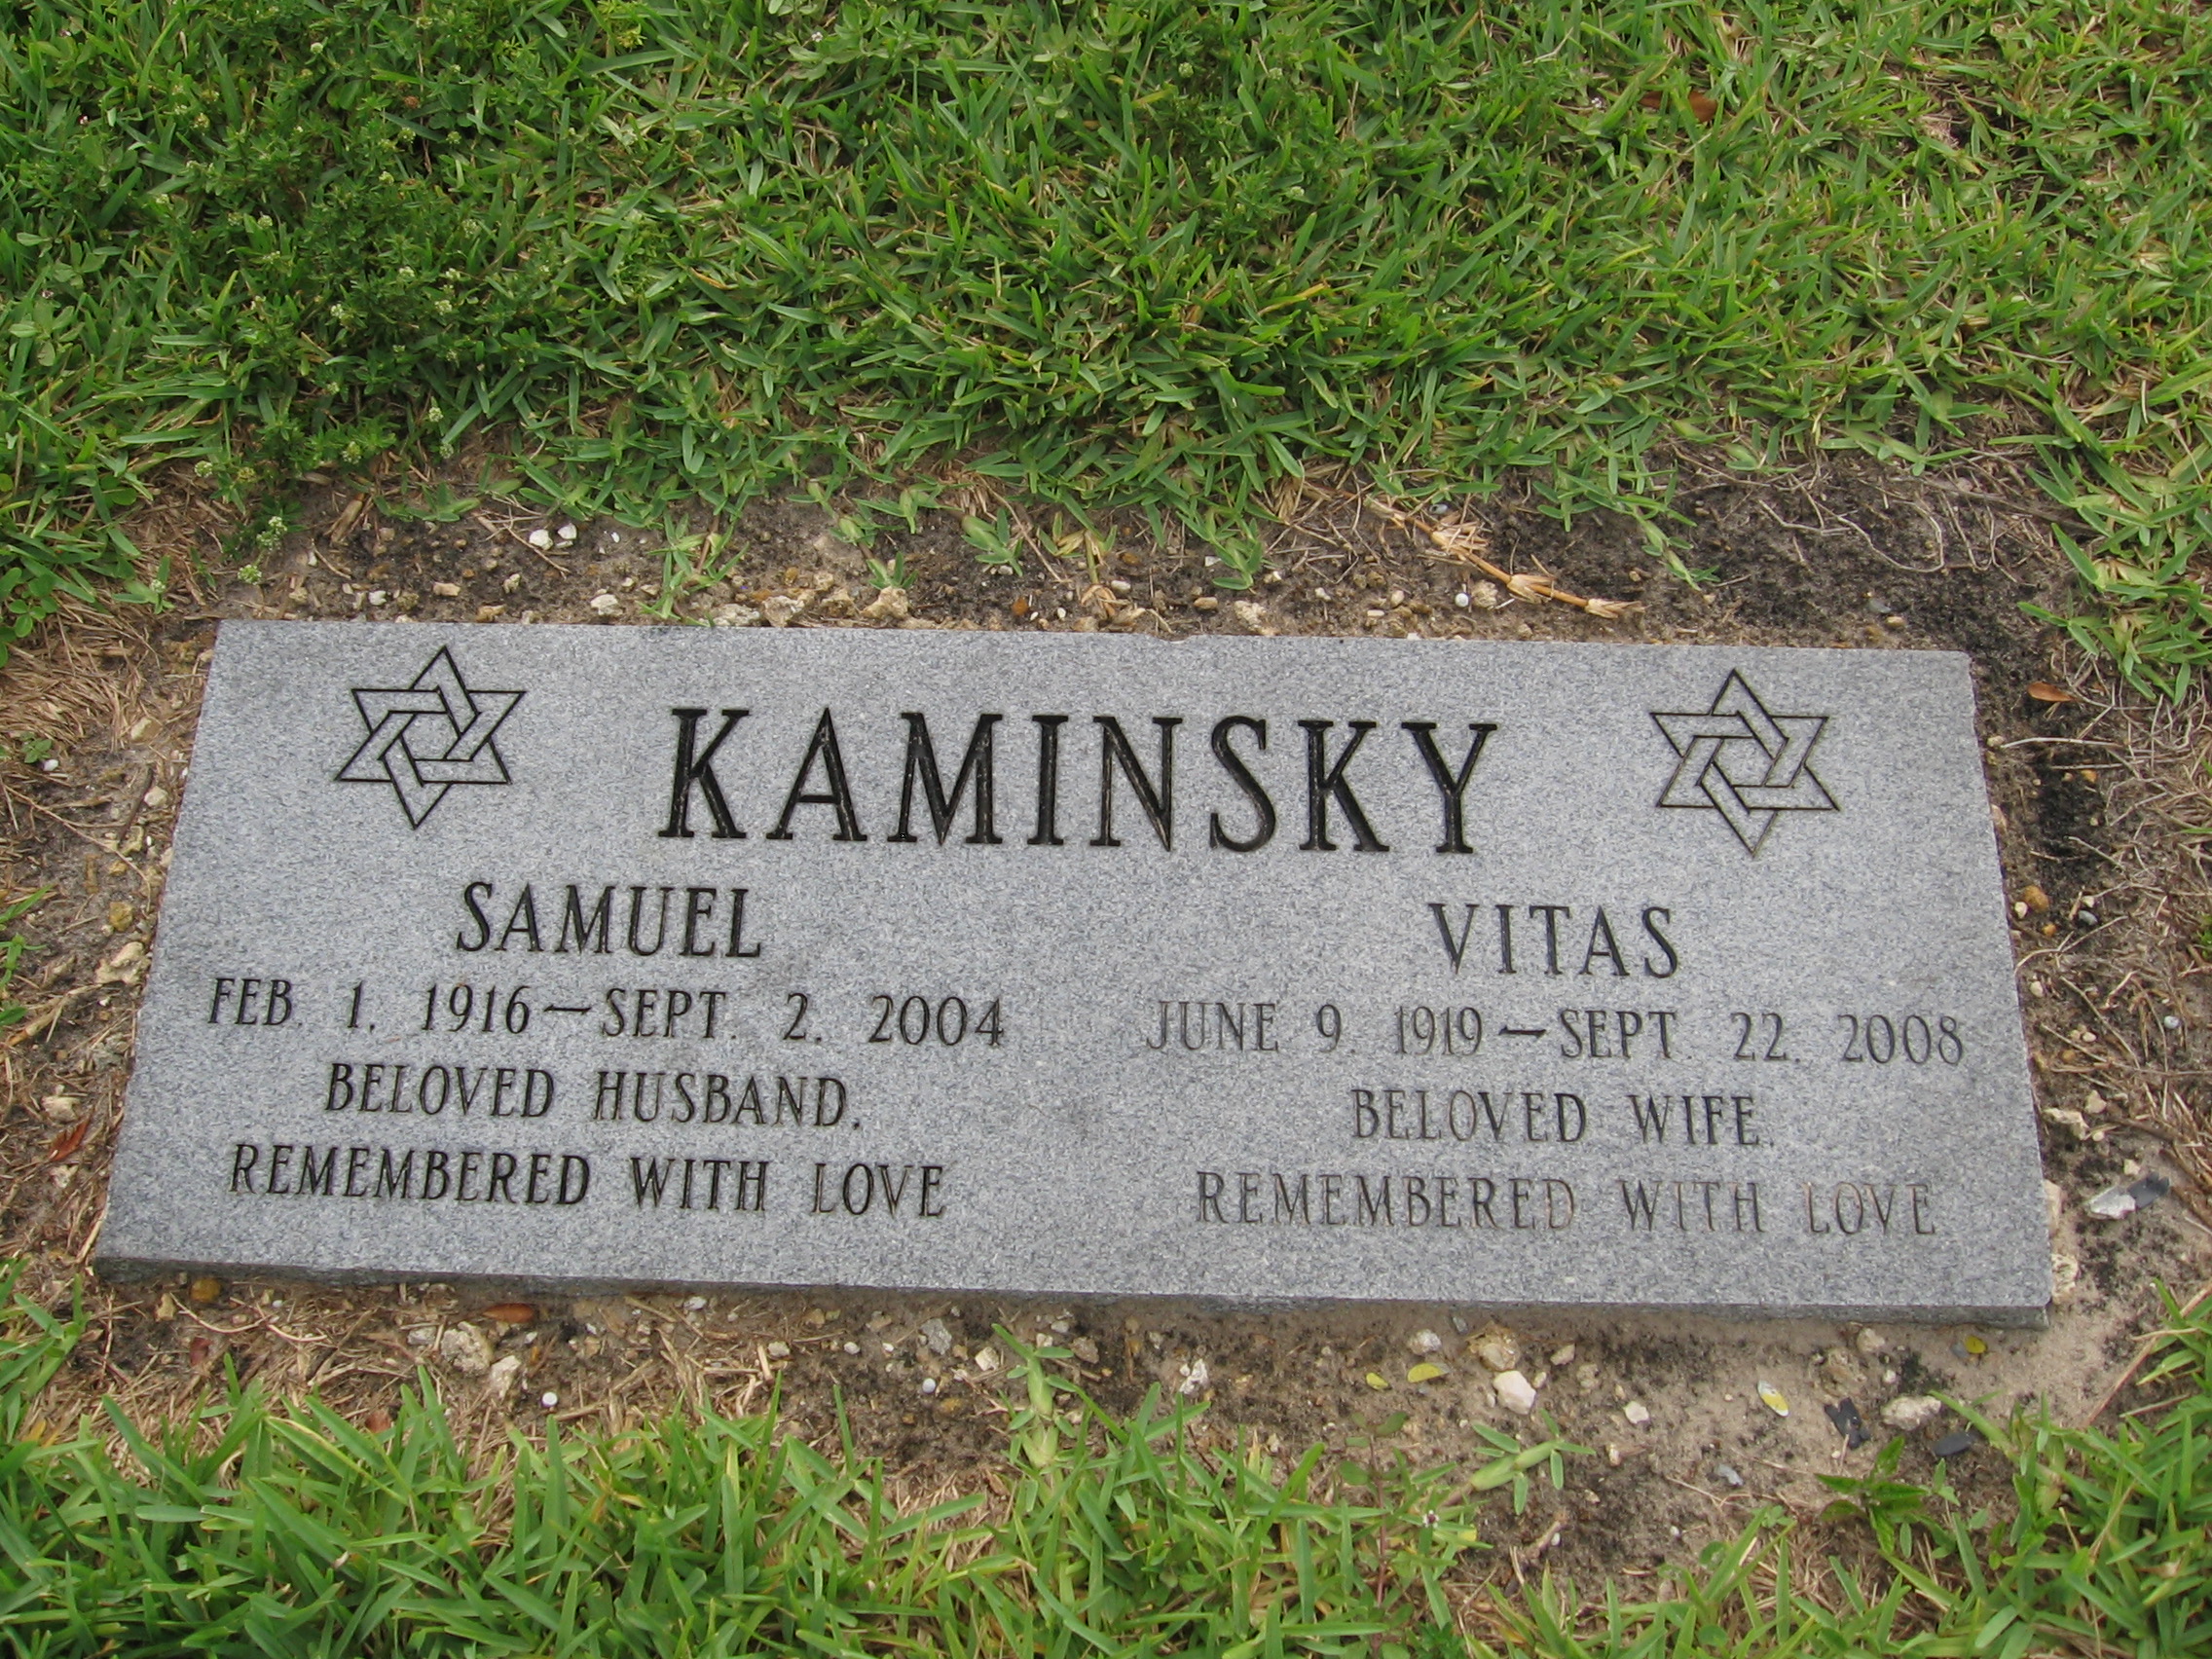 Vitas Kaminsky